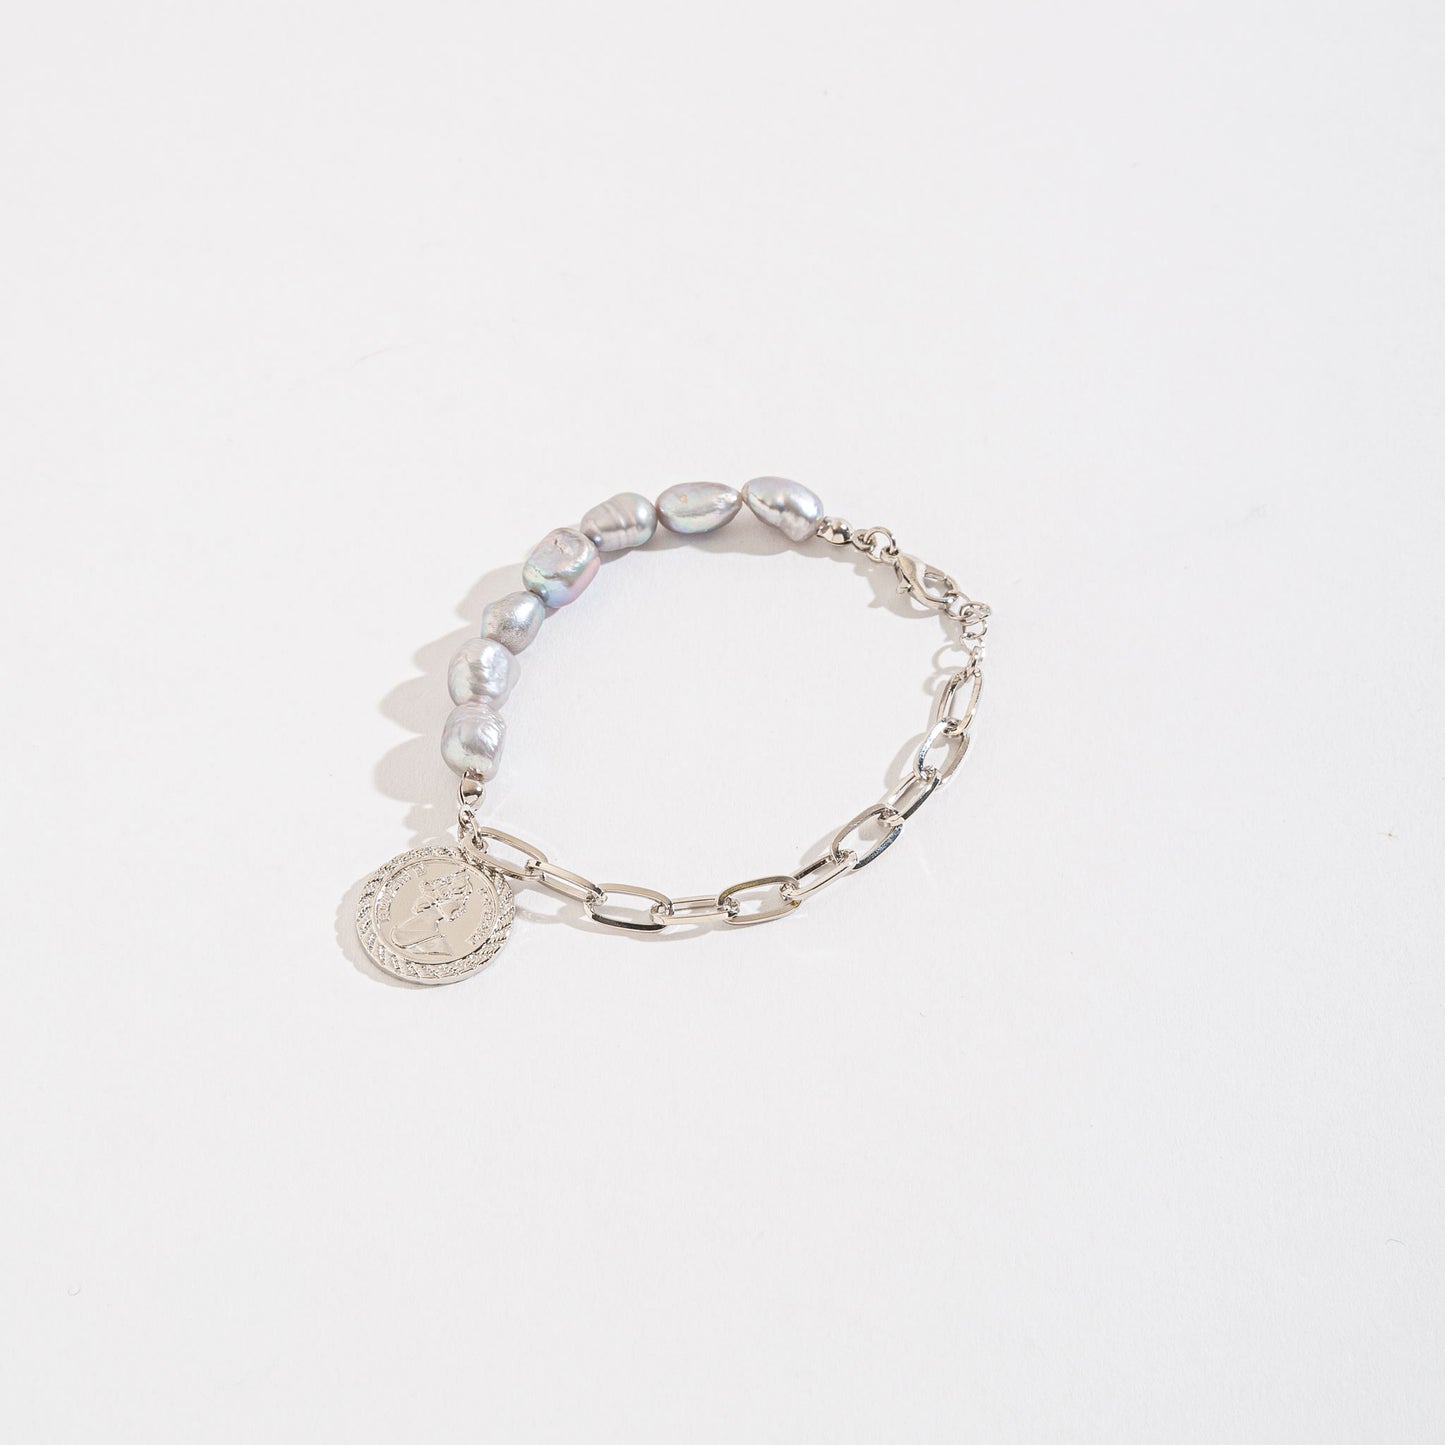 Mya Pearl & Coin Charm Bracelet